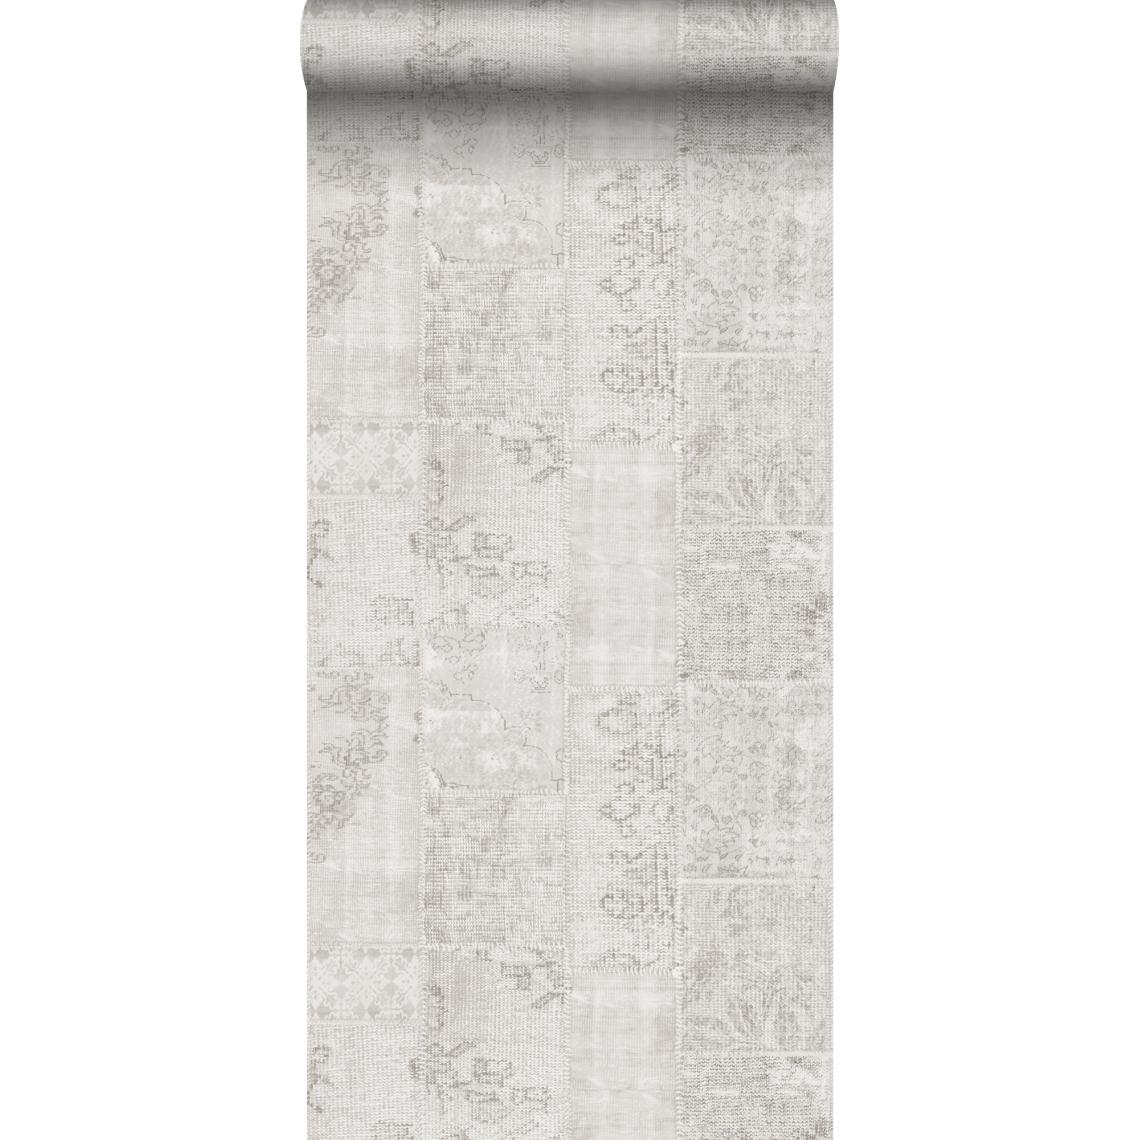 Sanders & Sanders - Sanders & Sanders papier peint motif kilim gris clair - 935263 - 53 cm x 10,05 m - Papier peint